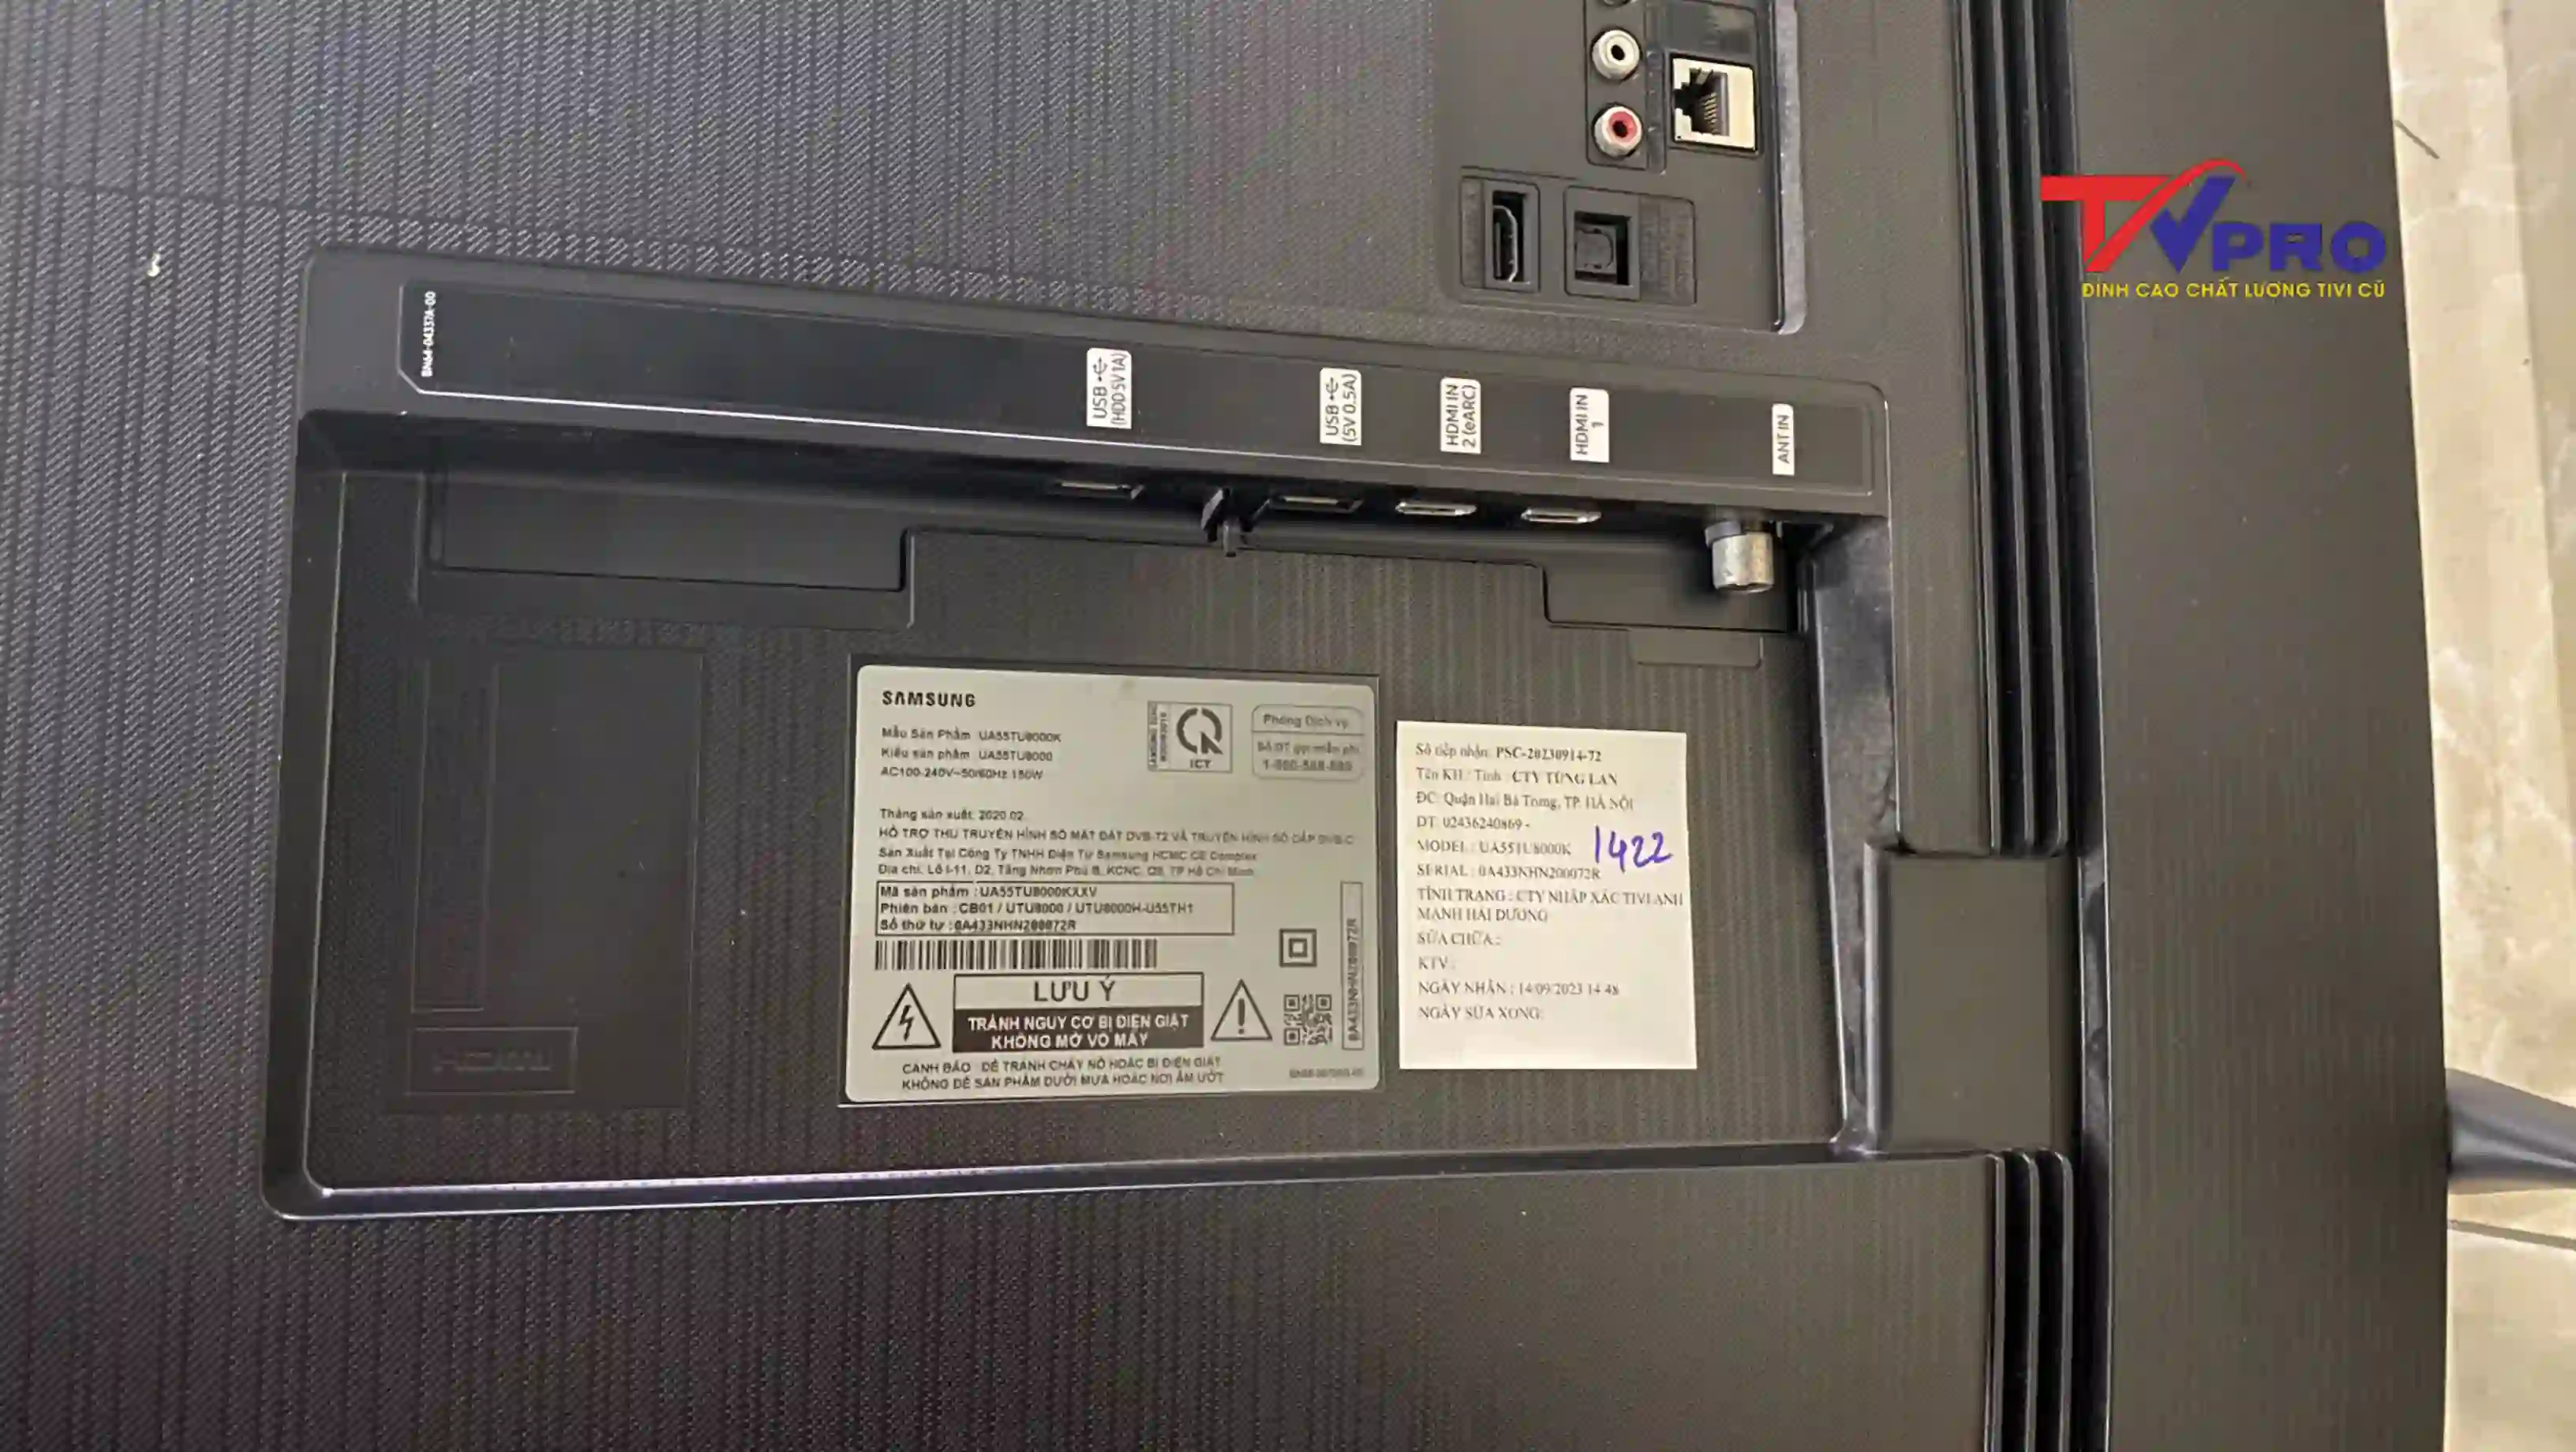 Thông số kỹ thuật của tivi Samsung UA55TU8000K cũ